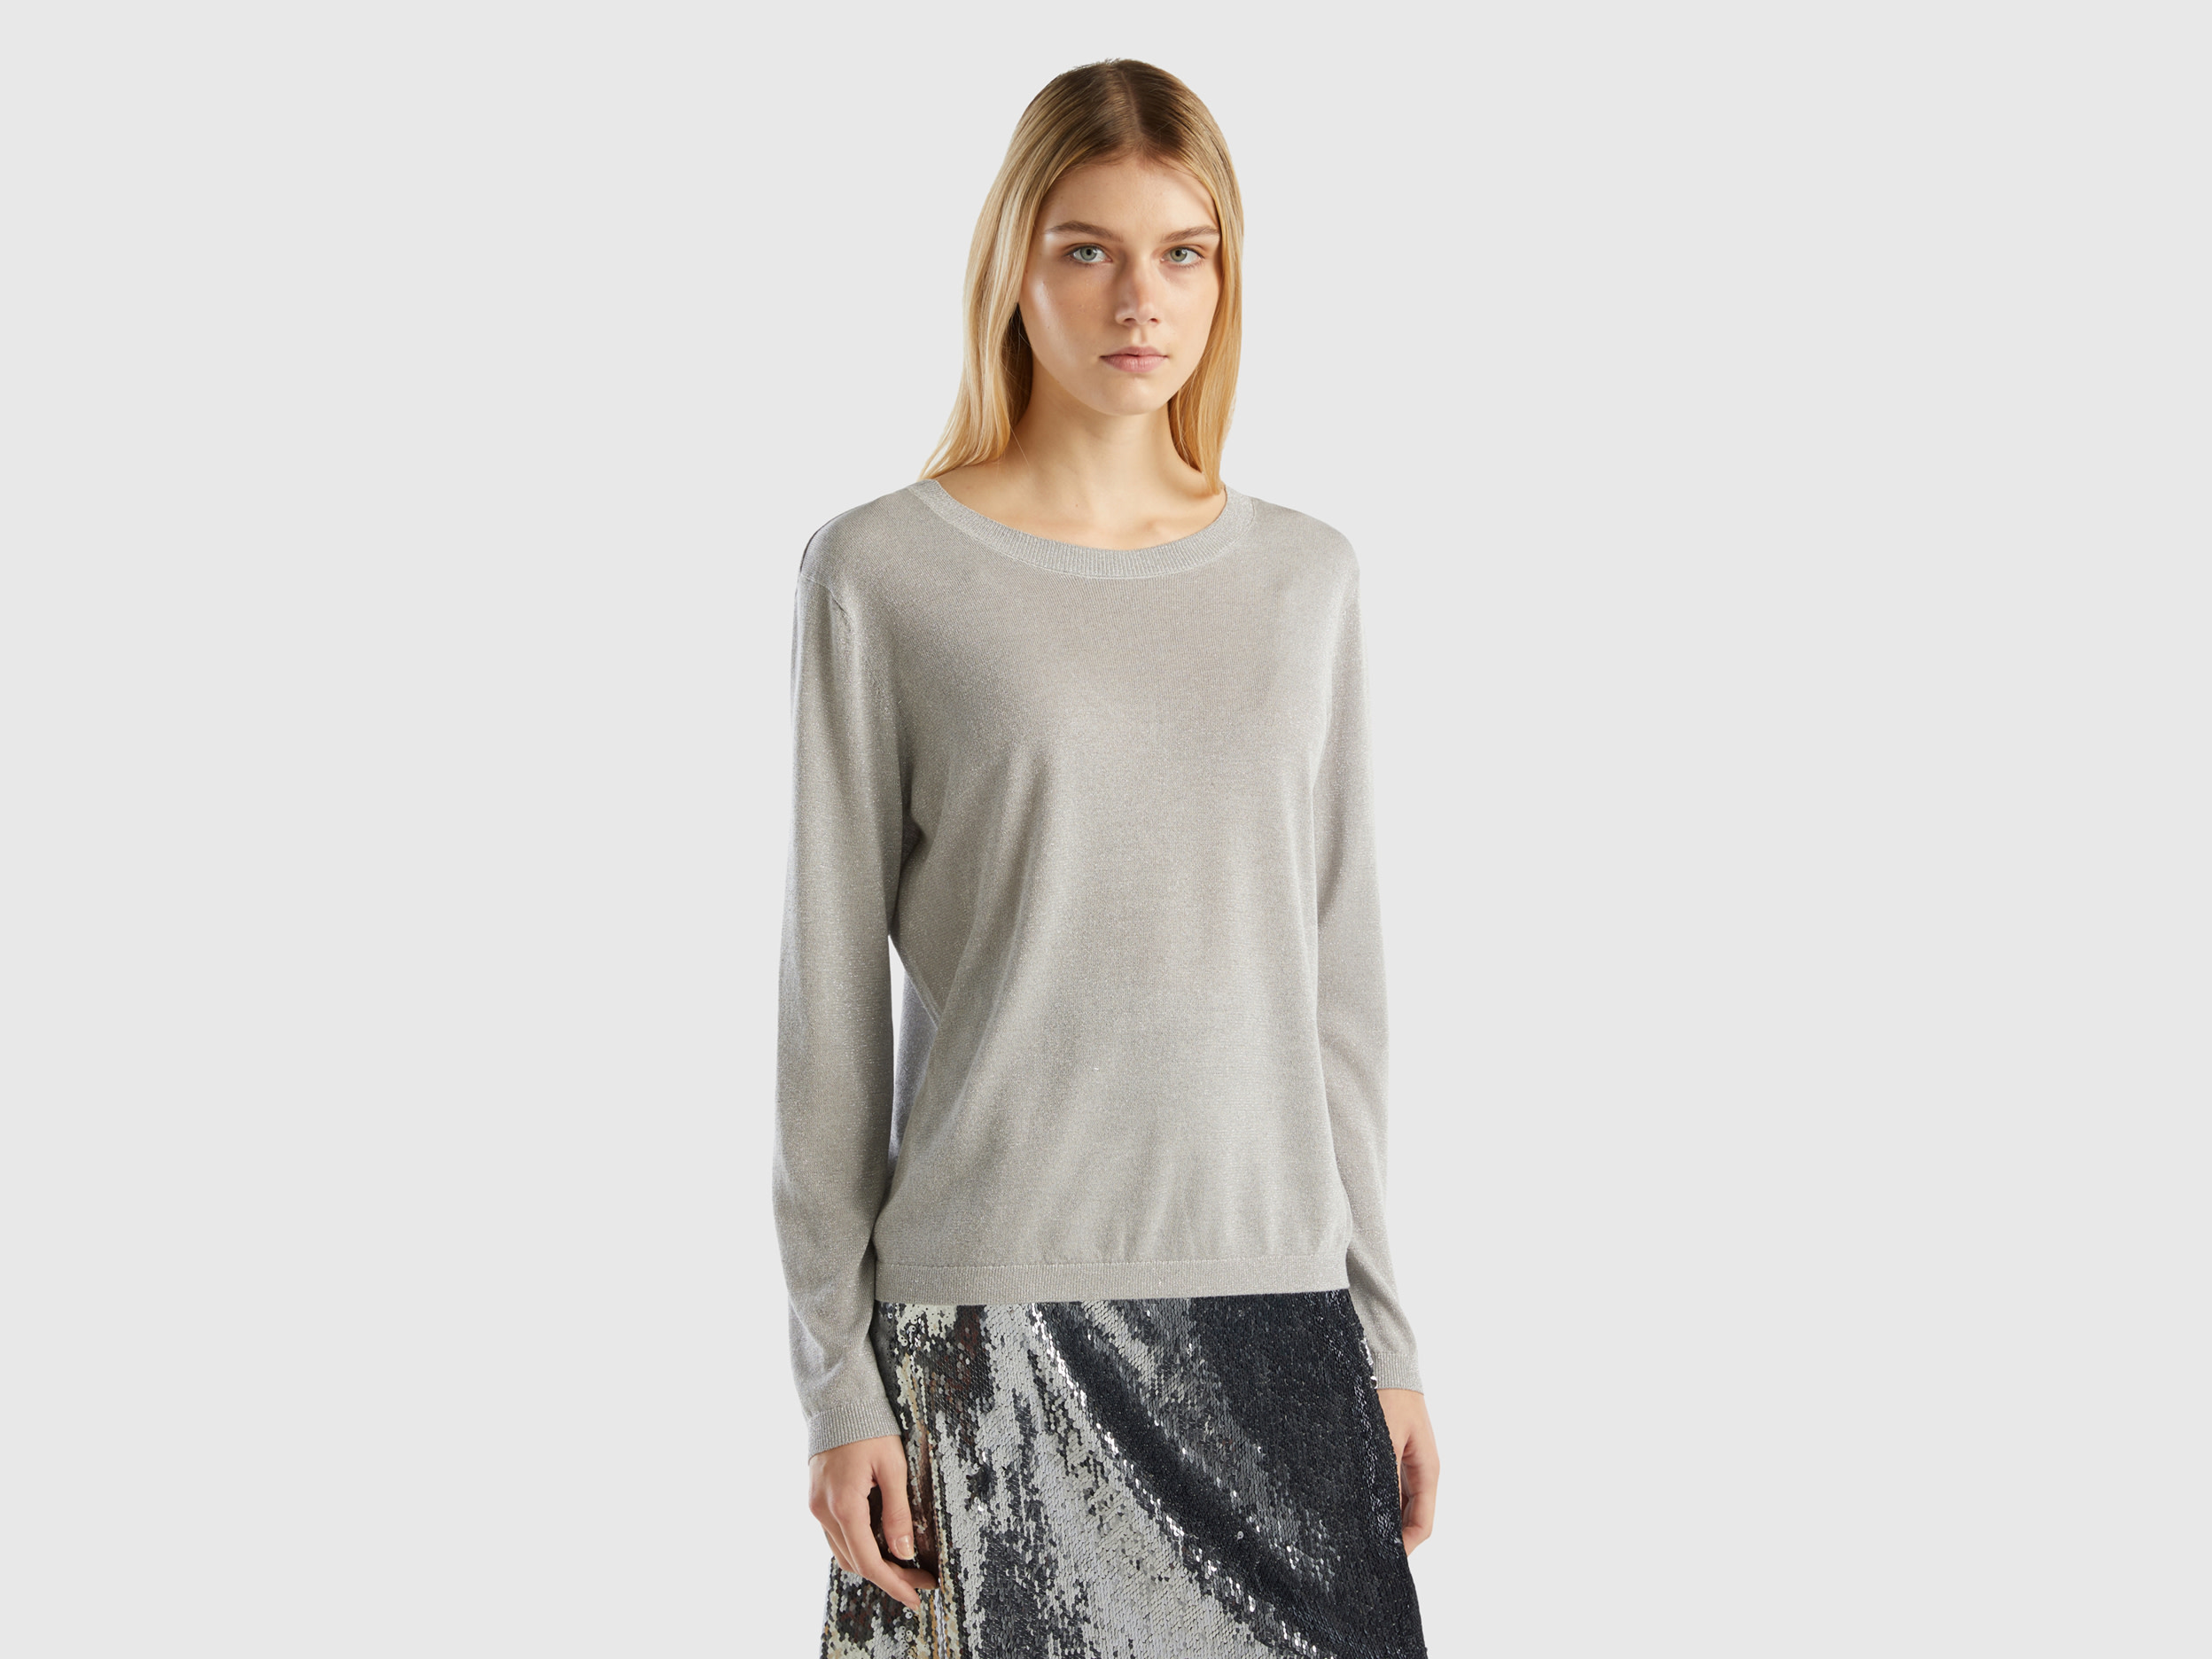 Benetton, Viscose Blend Sweater With Lurex, size L, Light Gray, Women